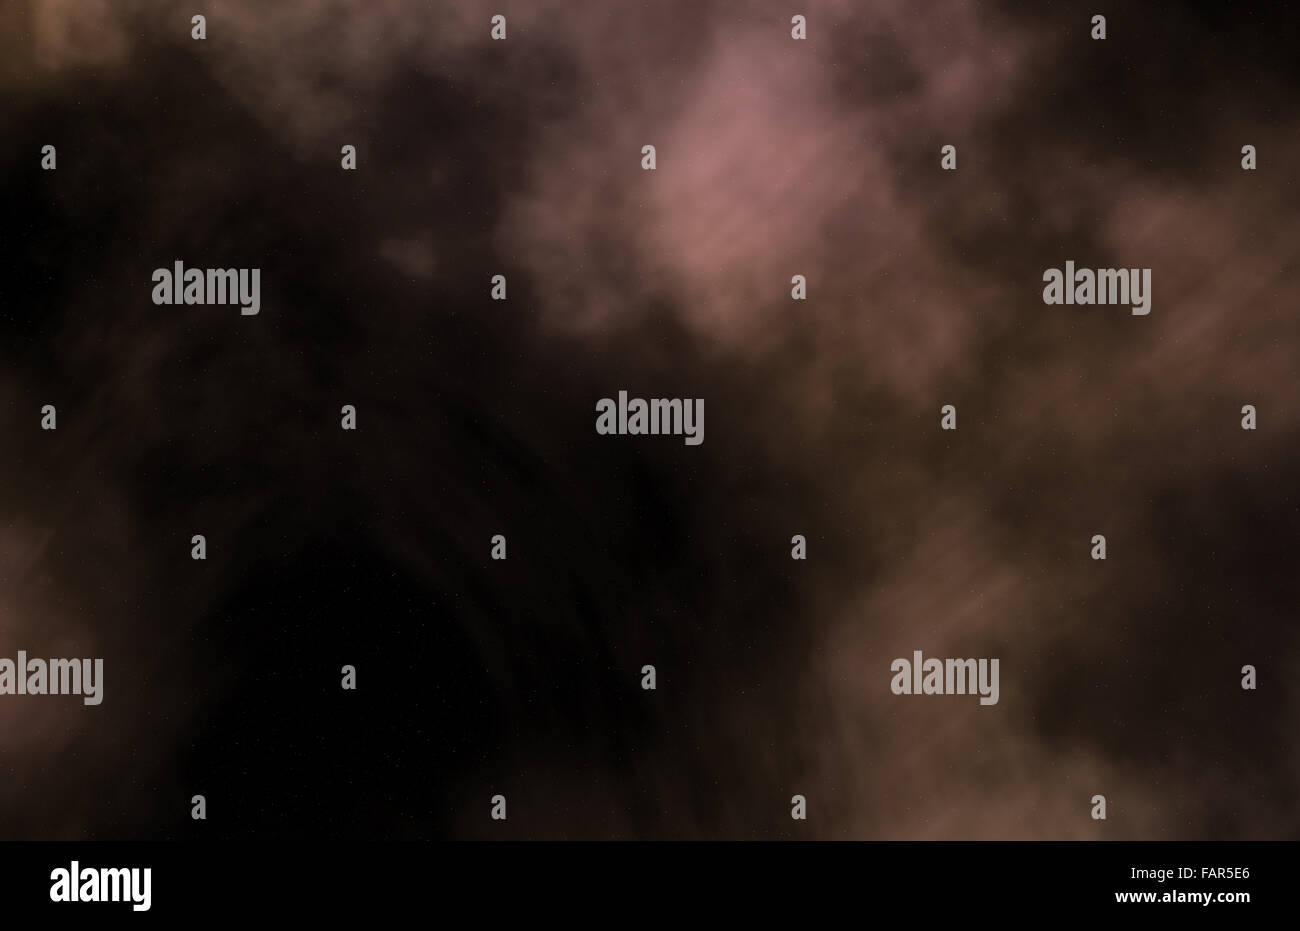 Design bestehend aus Nebel, Sterne und Farben als Metapher zum Thema Astronomie, Wissenschaft, Raum und Religion. Stockfoto